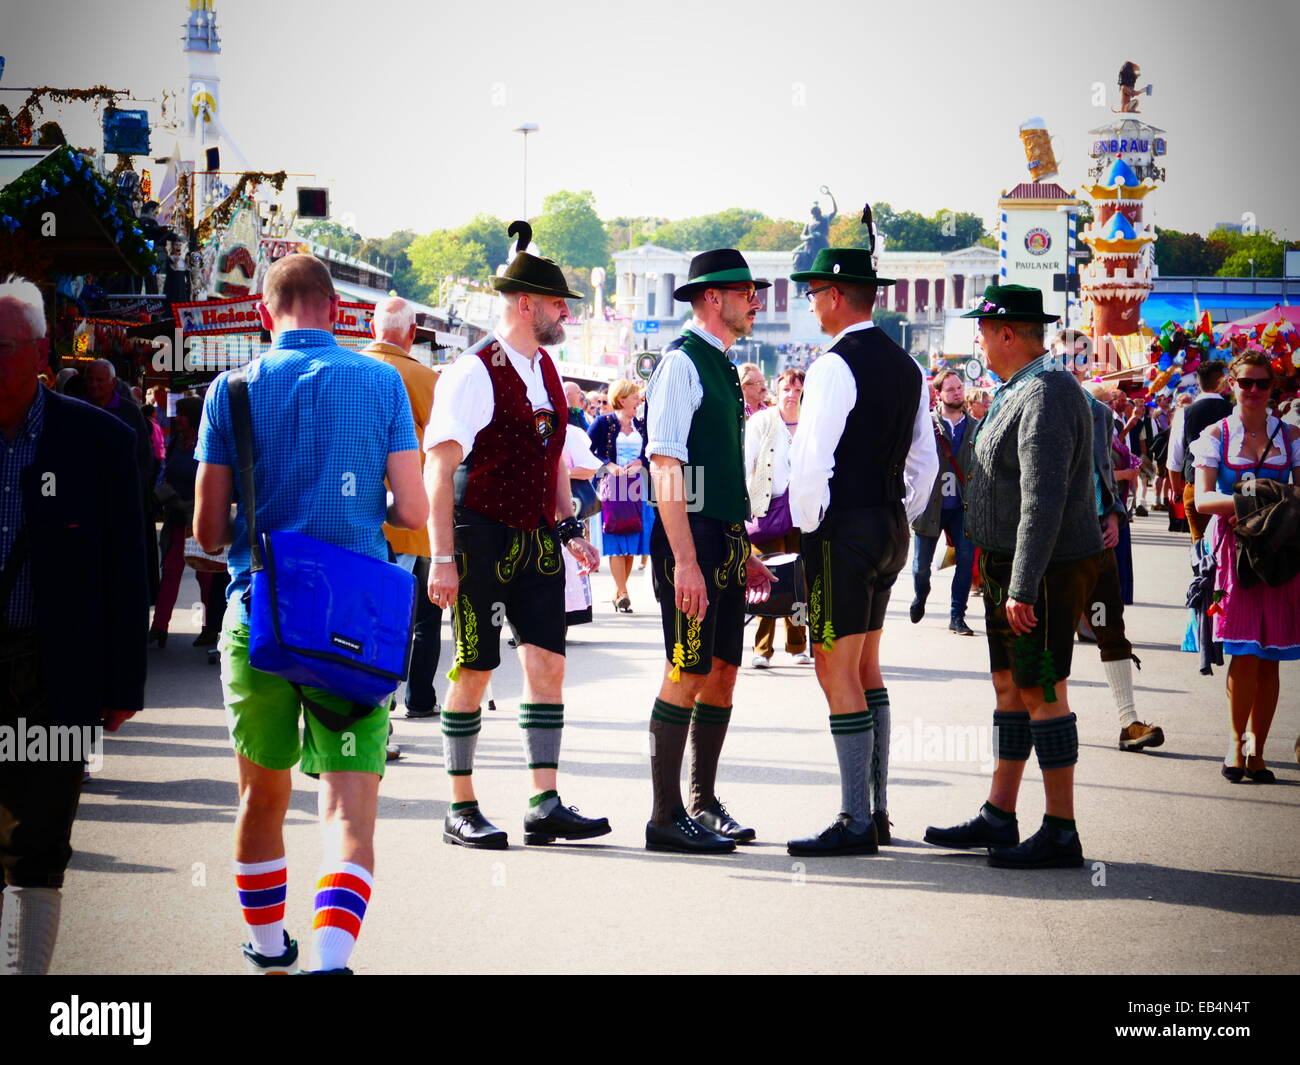 Germania Monaco di Baviera - Festa della birra Oktoberfest Oktoberfest Fiera 2014 visitatori in Lederhosen pantaloni in pelle per scattare delle foto in fr Foto Stock